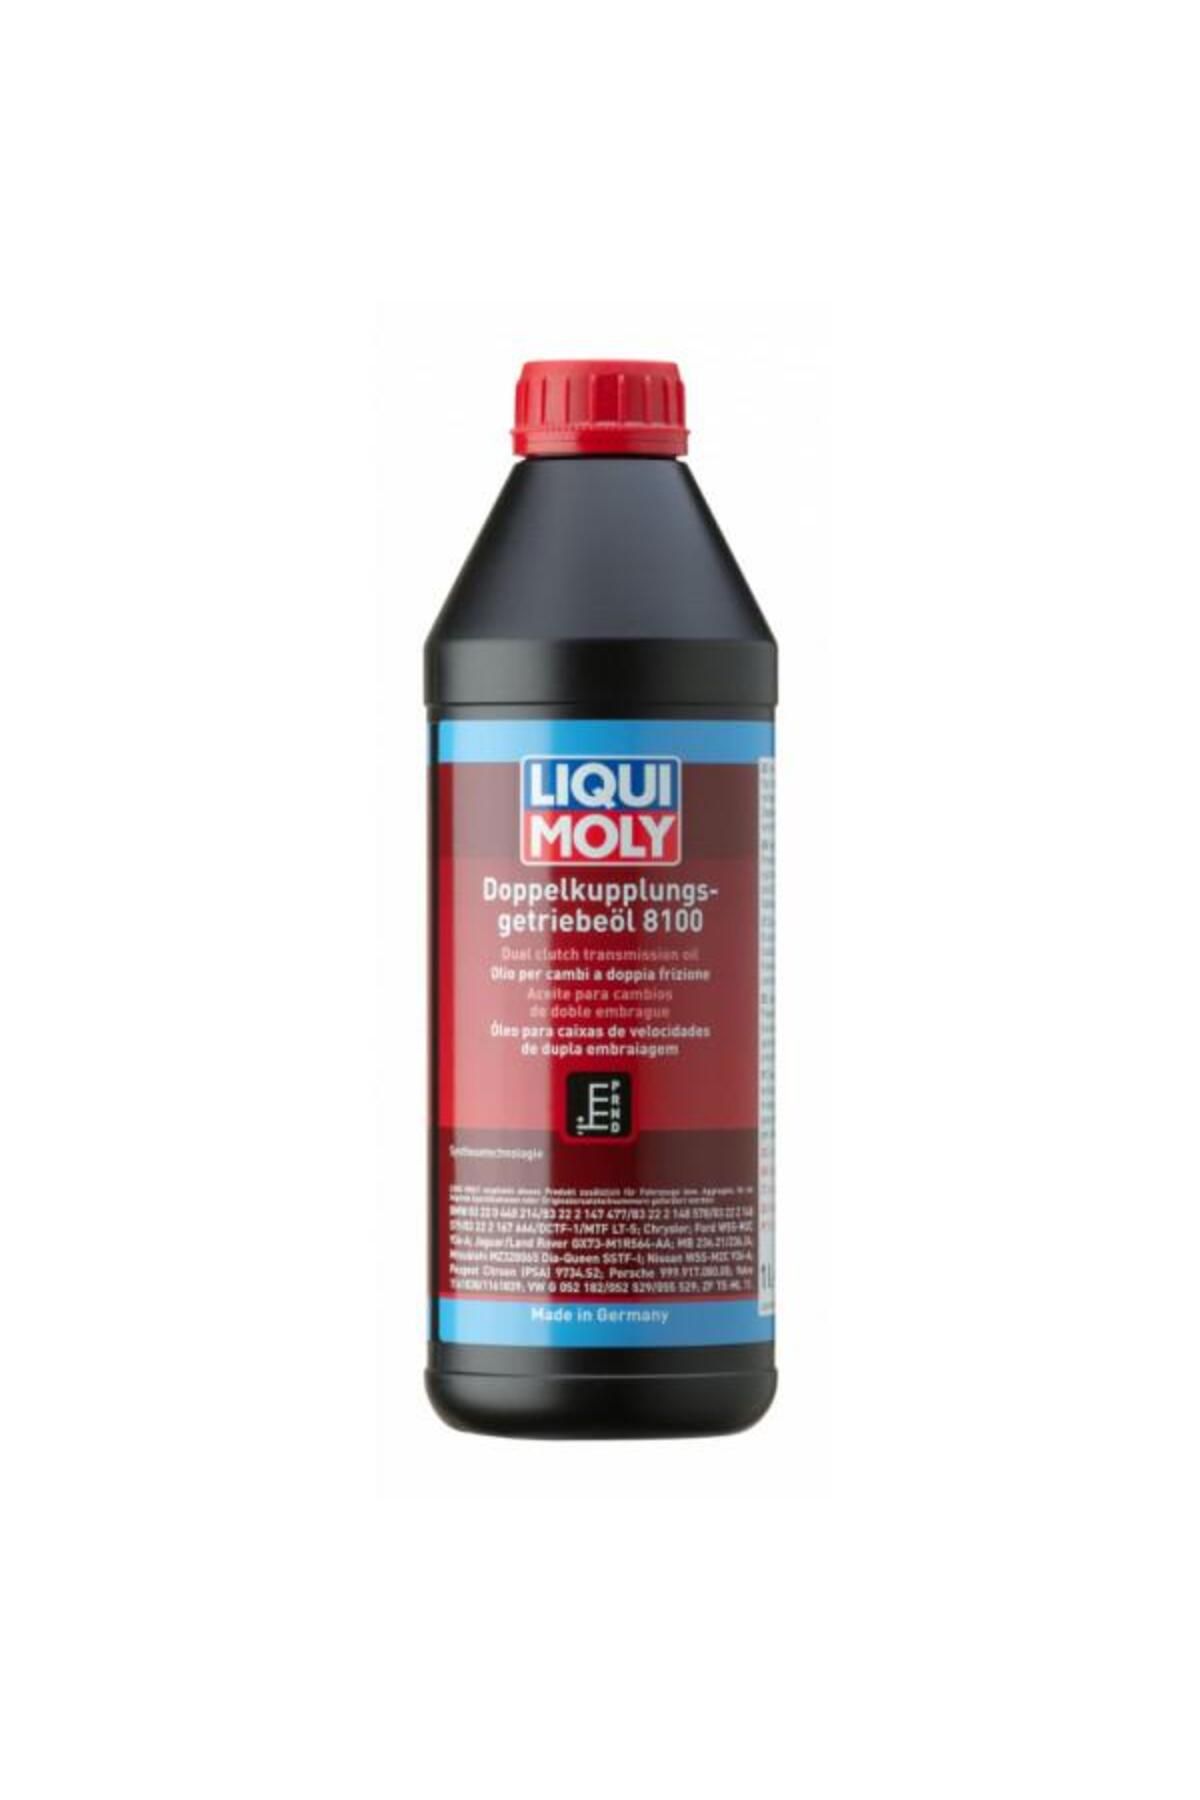 Liqui Moly Dsg Dual Clutch Trans. Oil 8100 1L (3640)